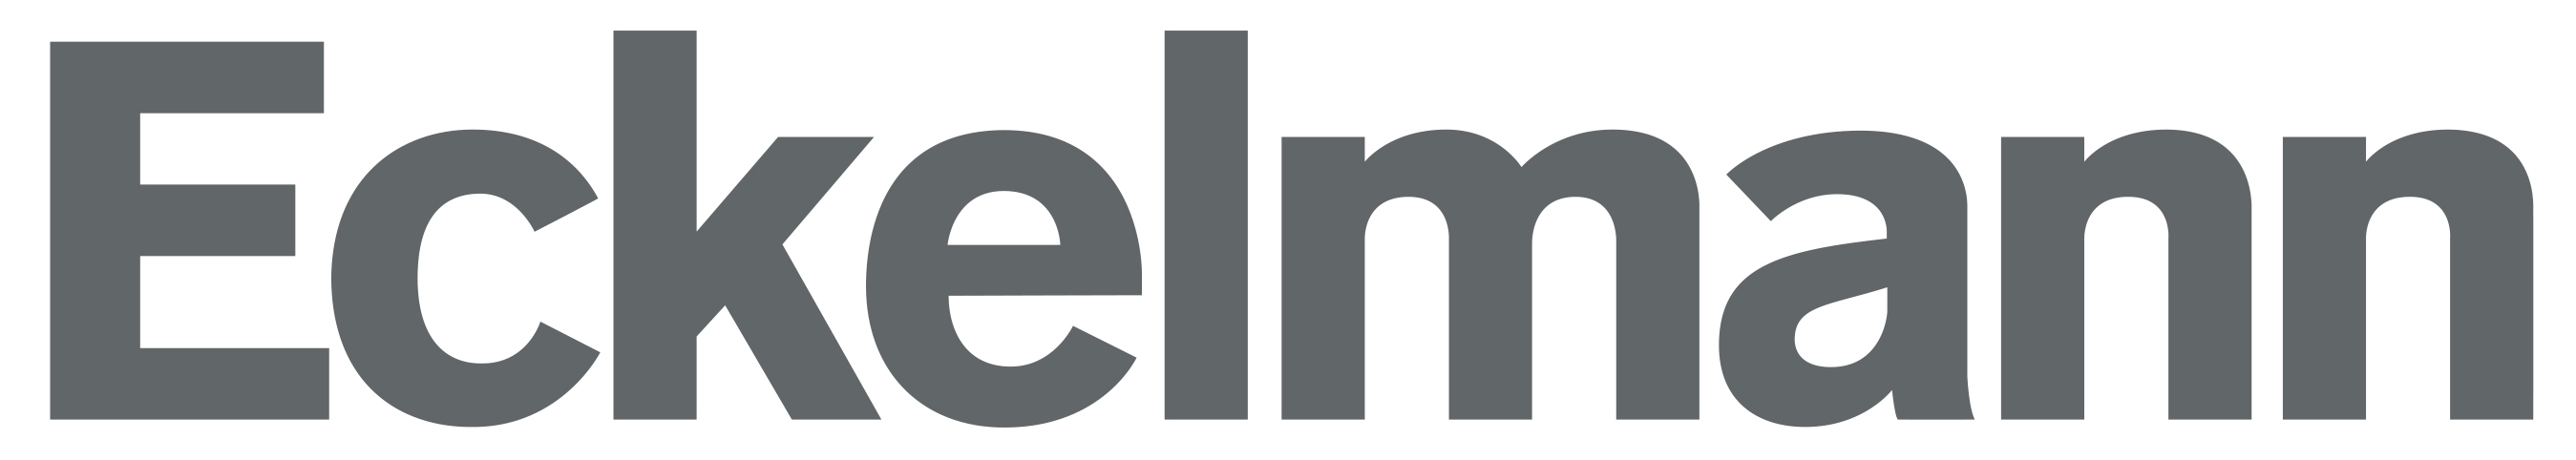 
			Eckelmann Logo farbig rgb
		